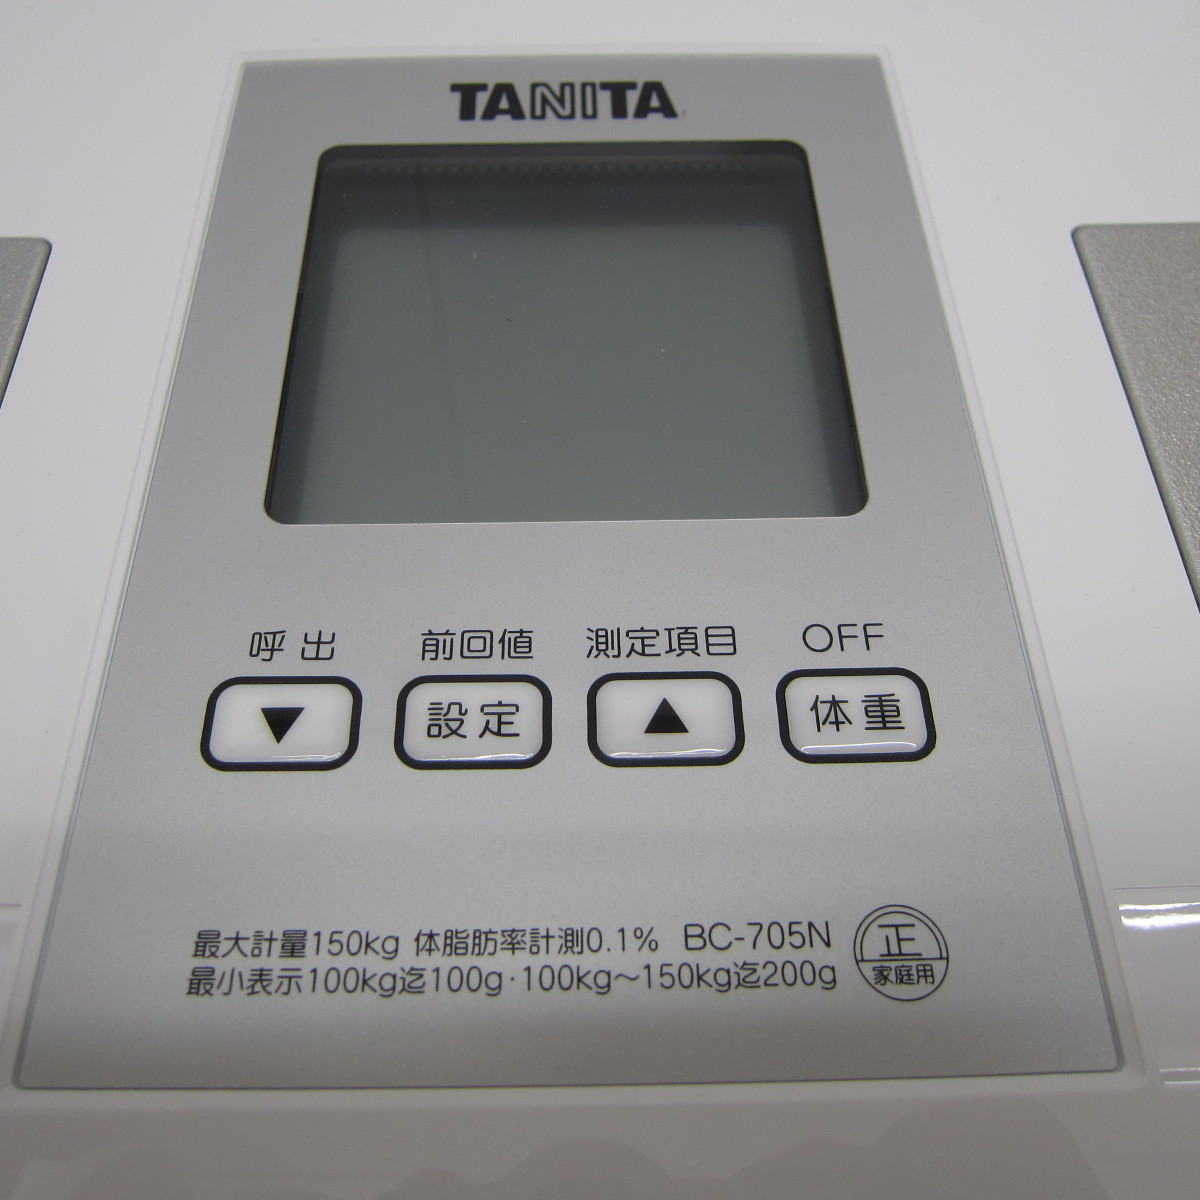 タニタ 体重 日本製 WH 自動認識機能付き 体組成計 BC-705N